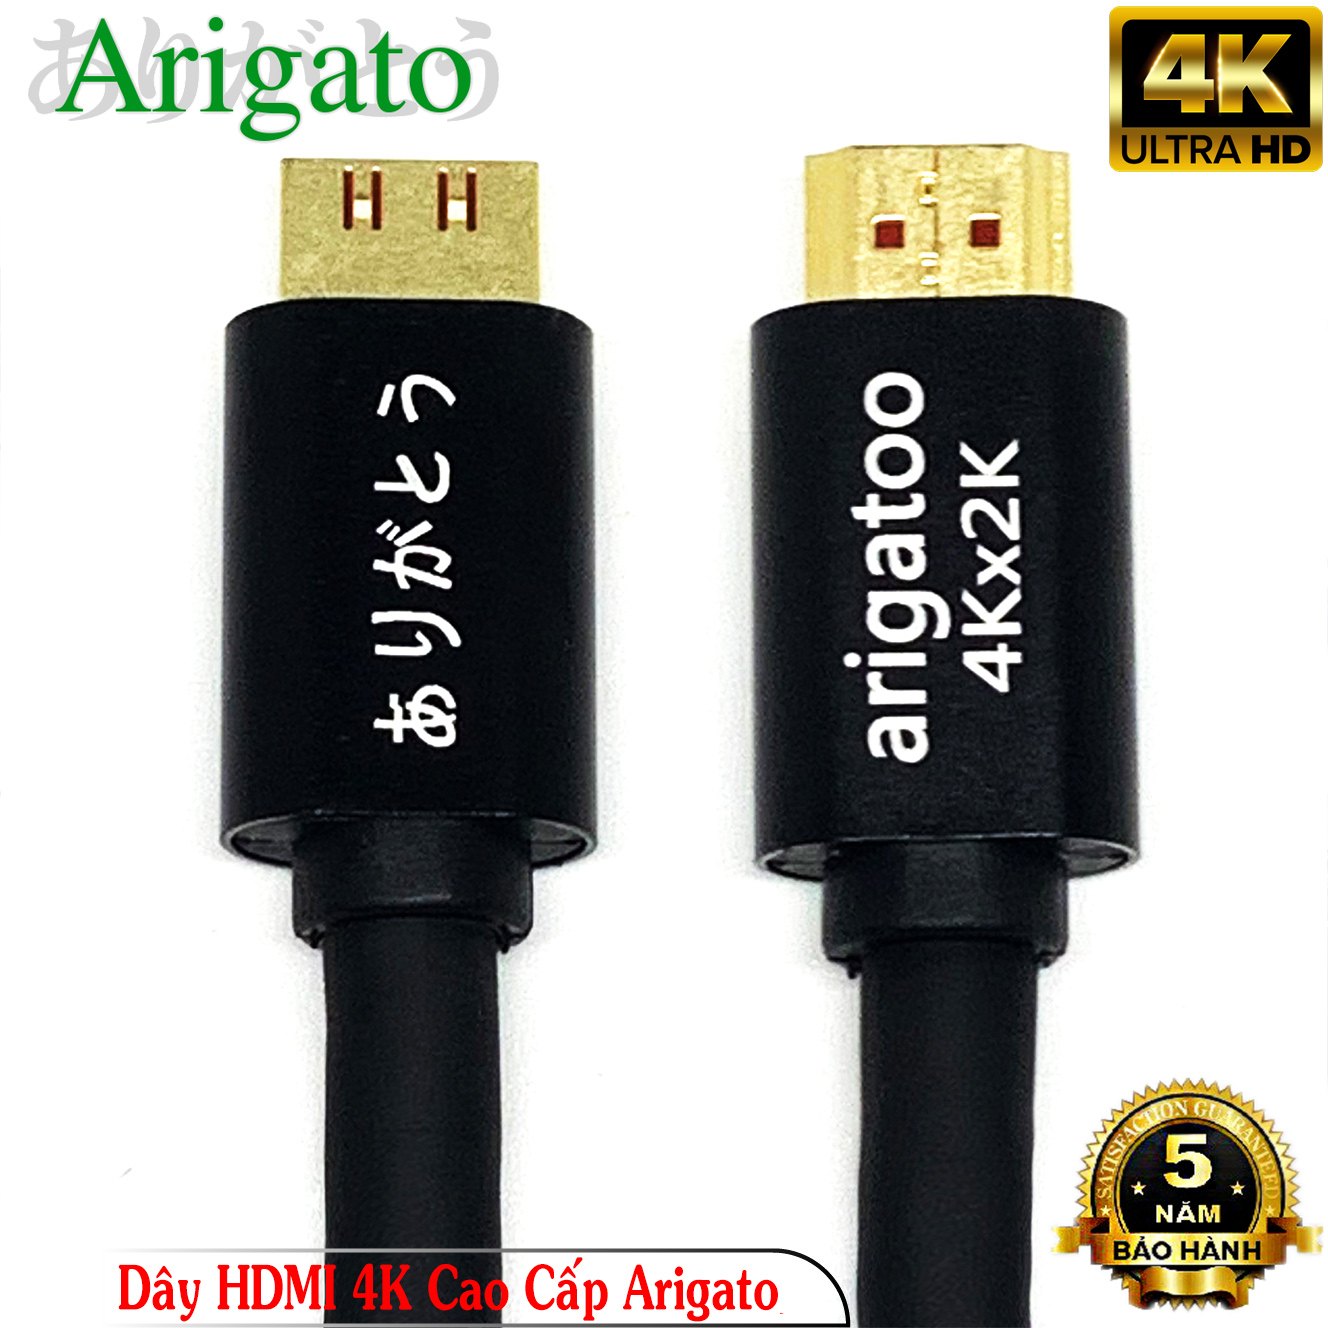 Dây HDMI 15M Arigatoo Chuẩn 4K Xịn